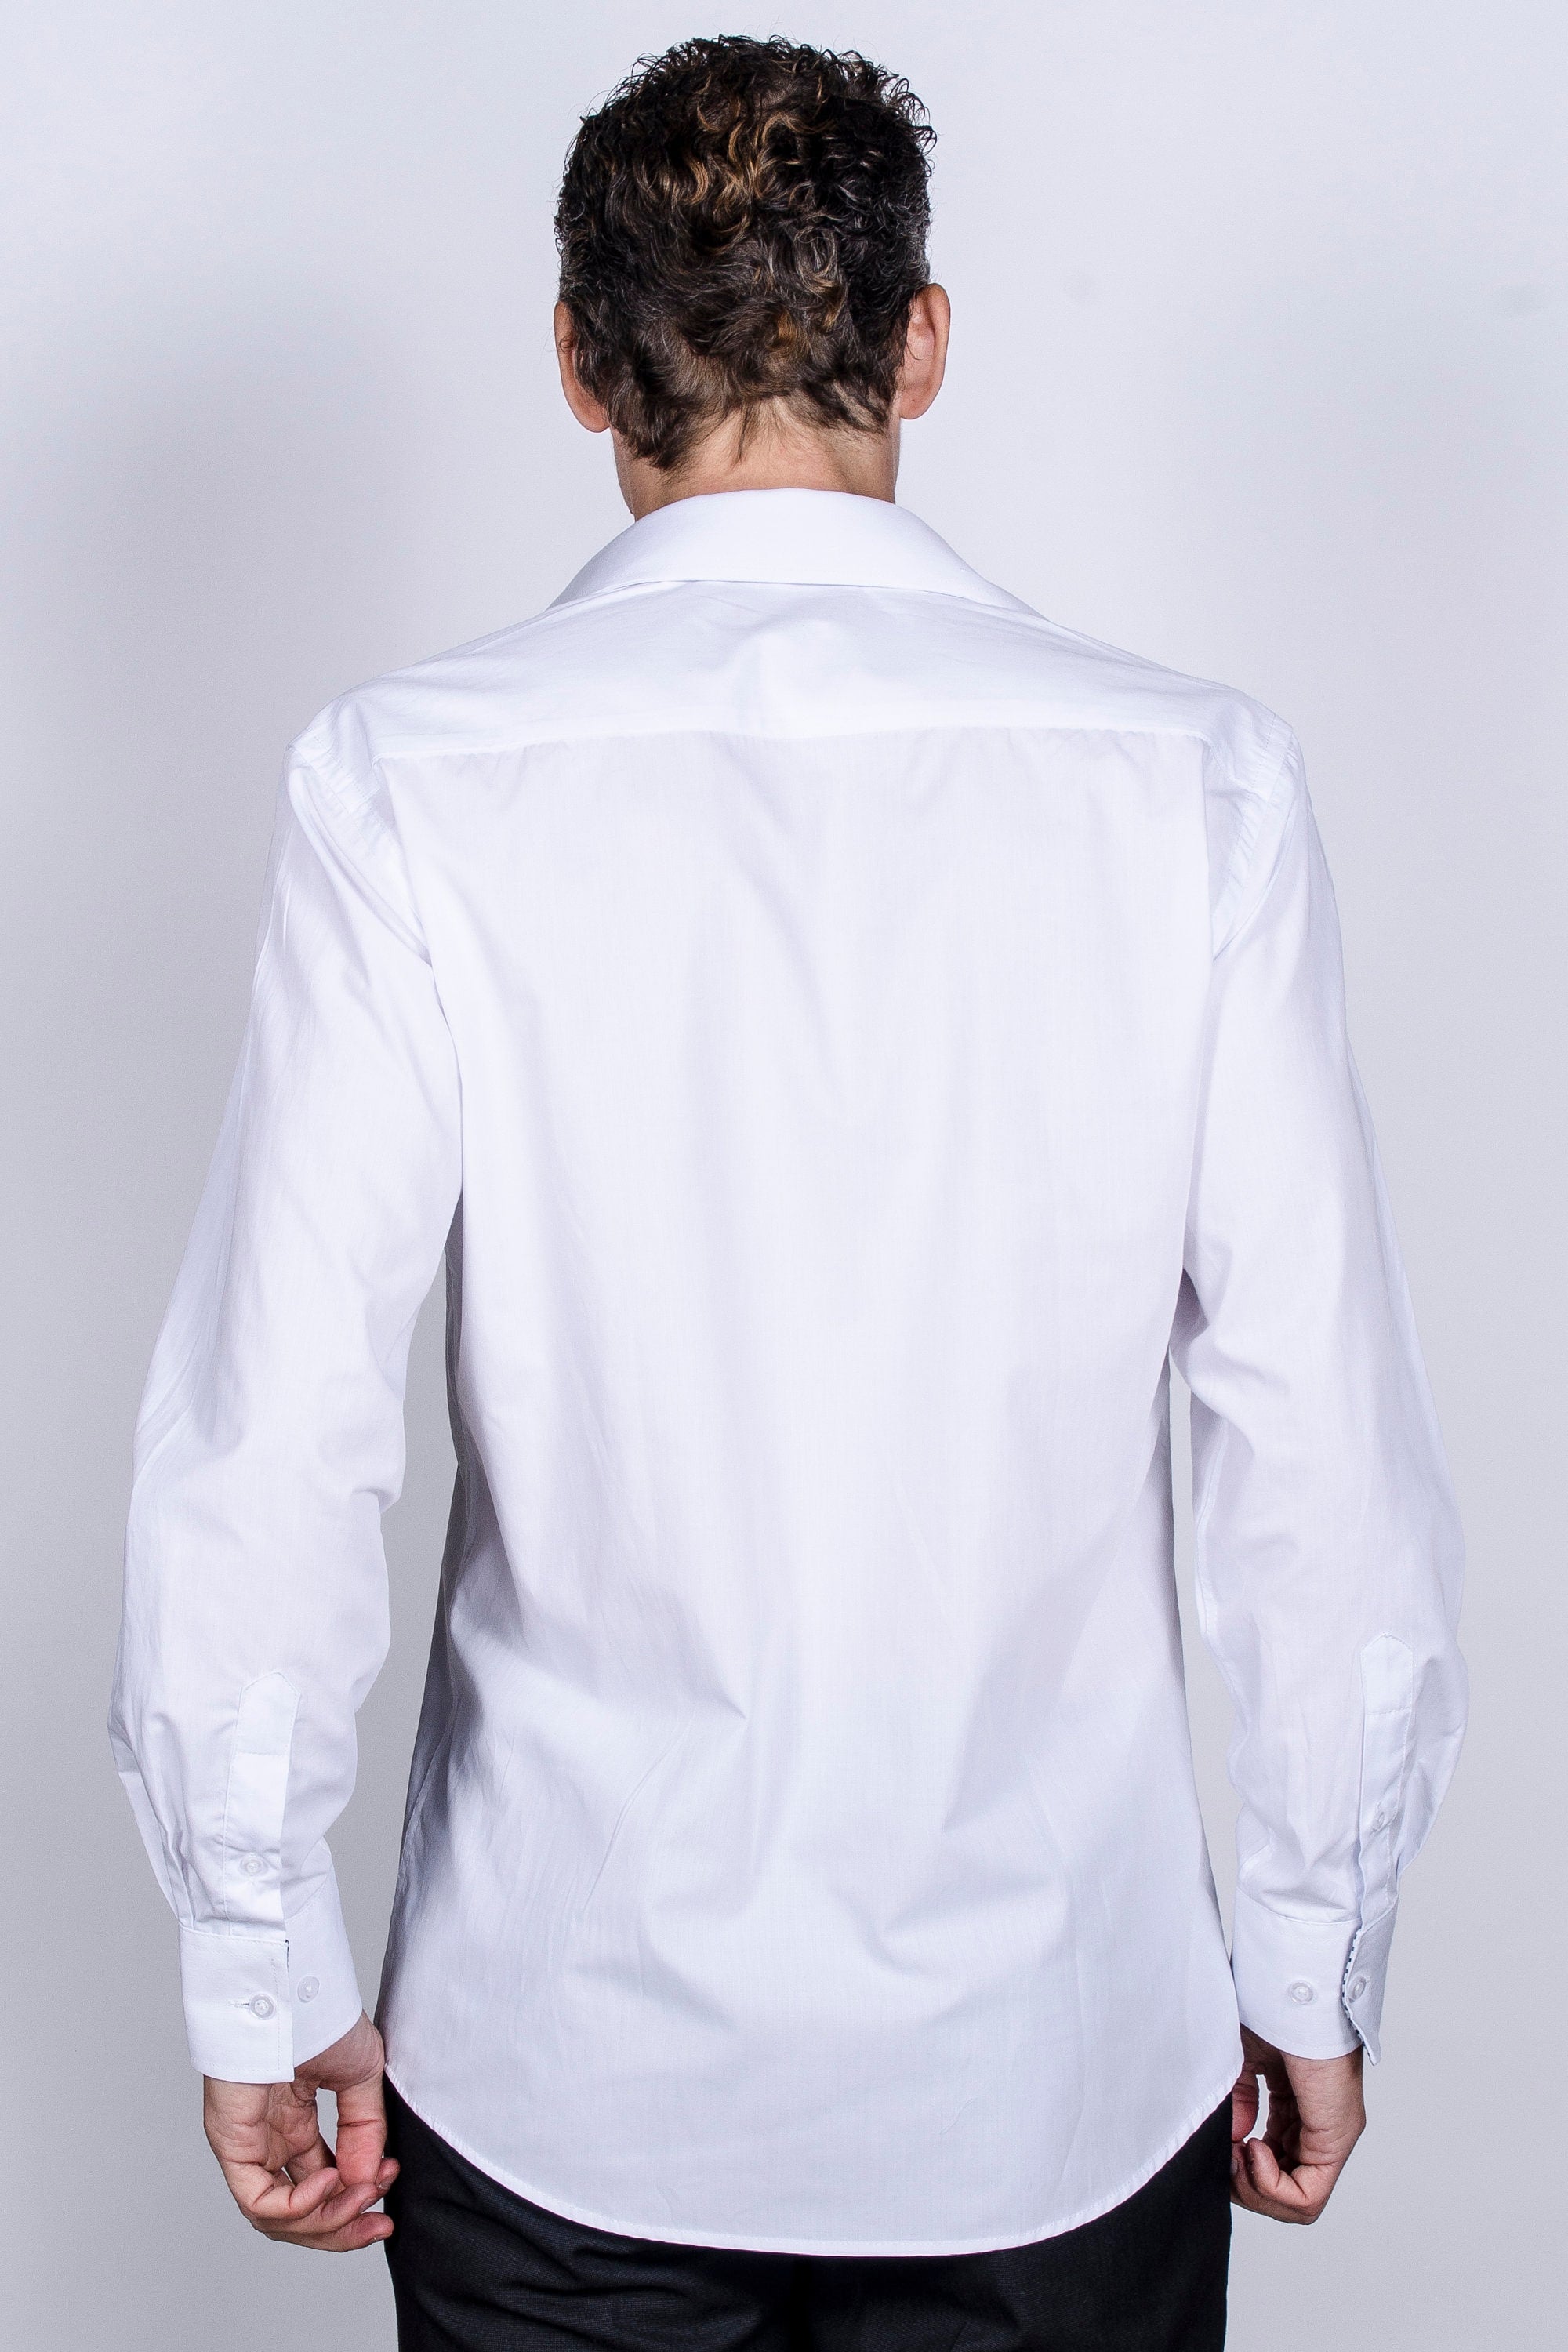 KOVROS Men's Premium Designer Slim Fit Dress Shirt, White